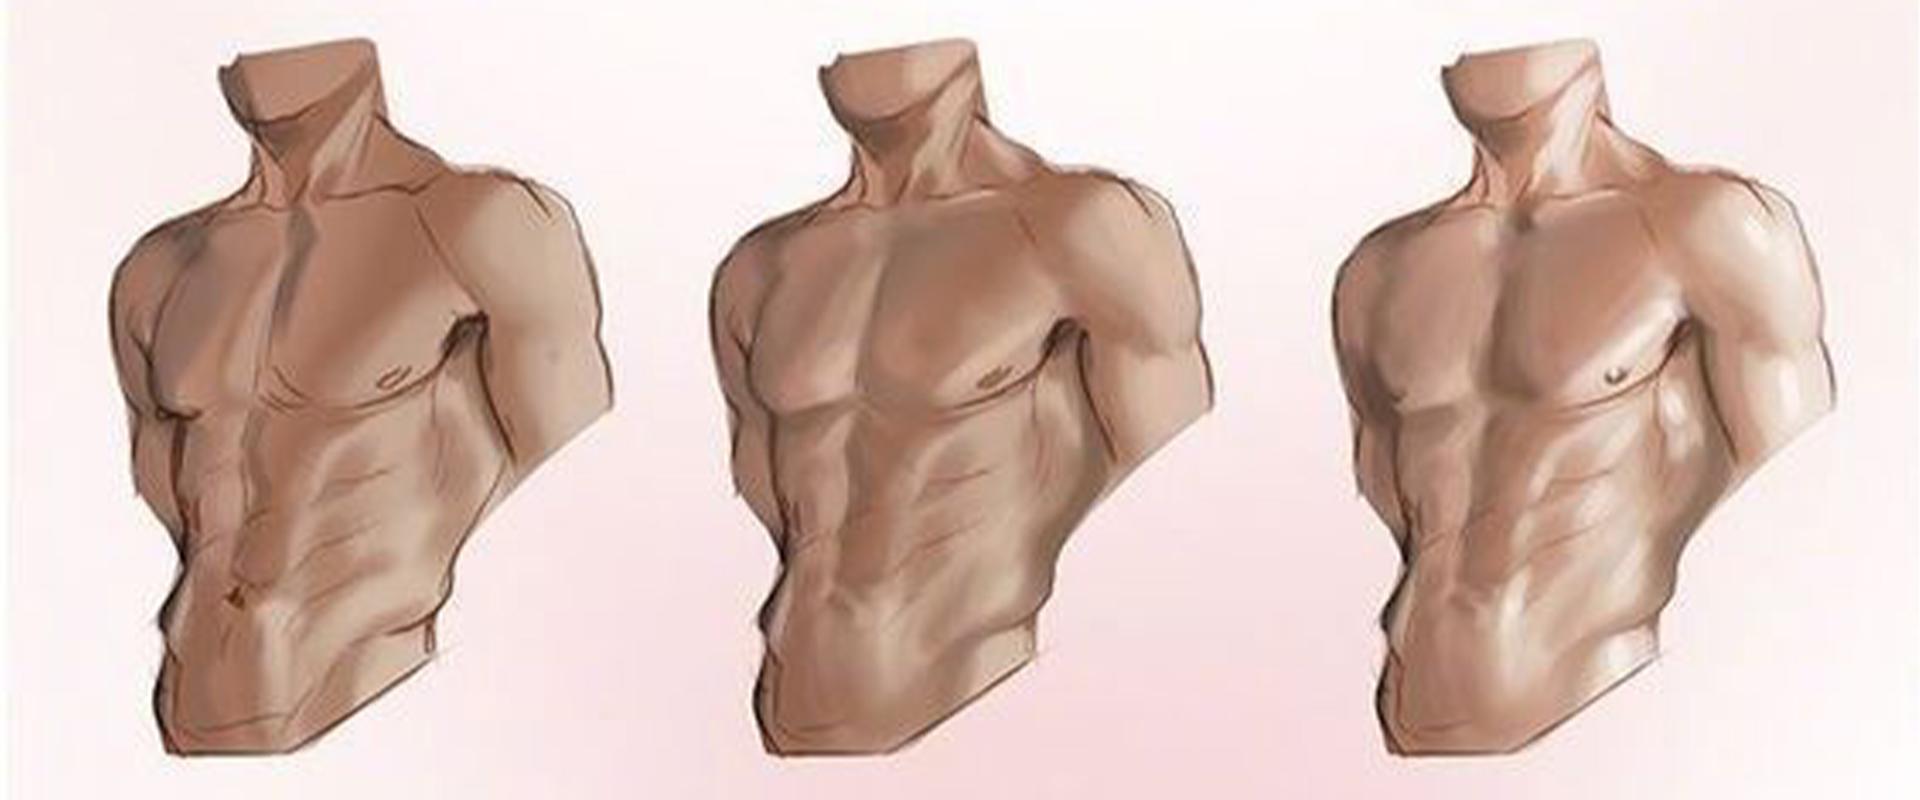 男性腹肌绘画素材图片